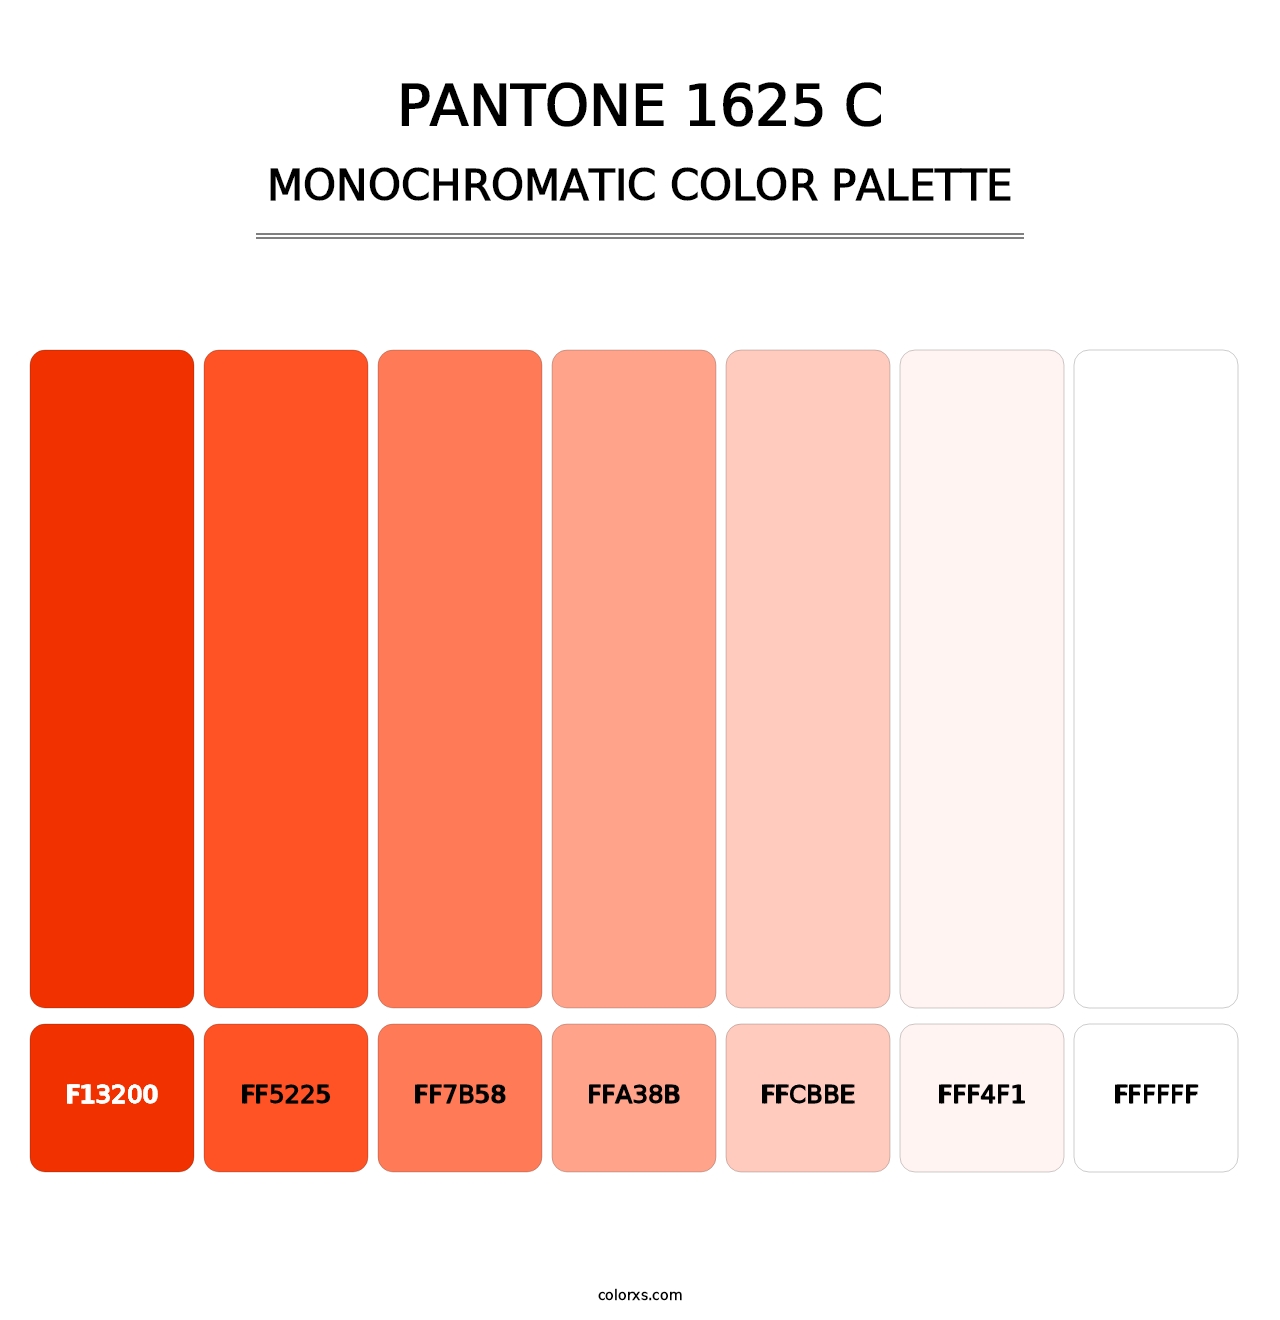 PANTONE 1625 C - Monochromatic Color Palette